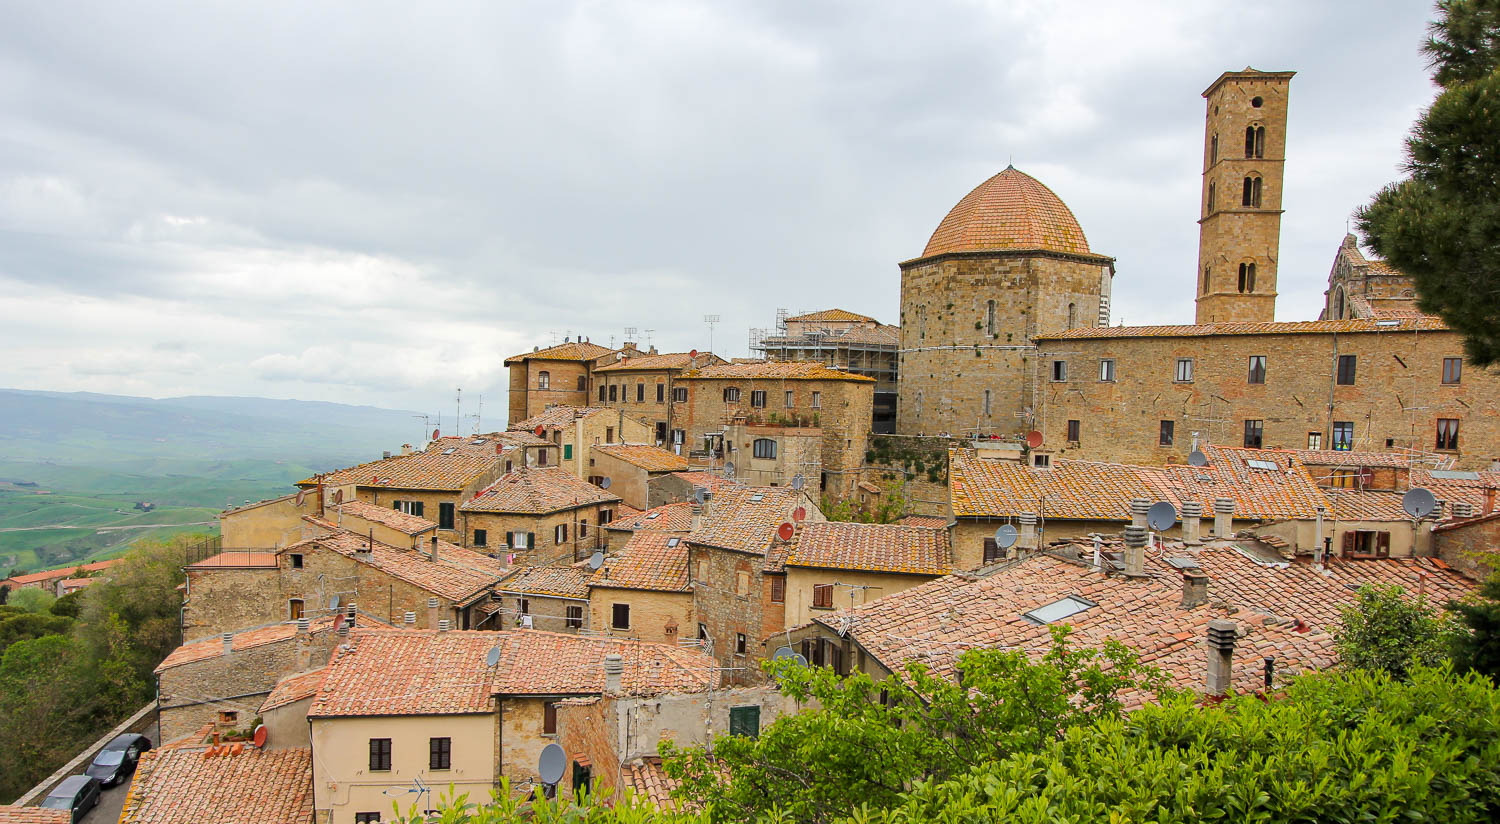 Volterra - Tuscany itinerary - Tuscany things to do